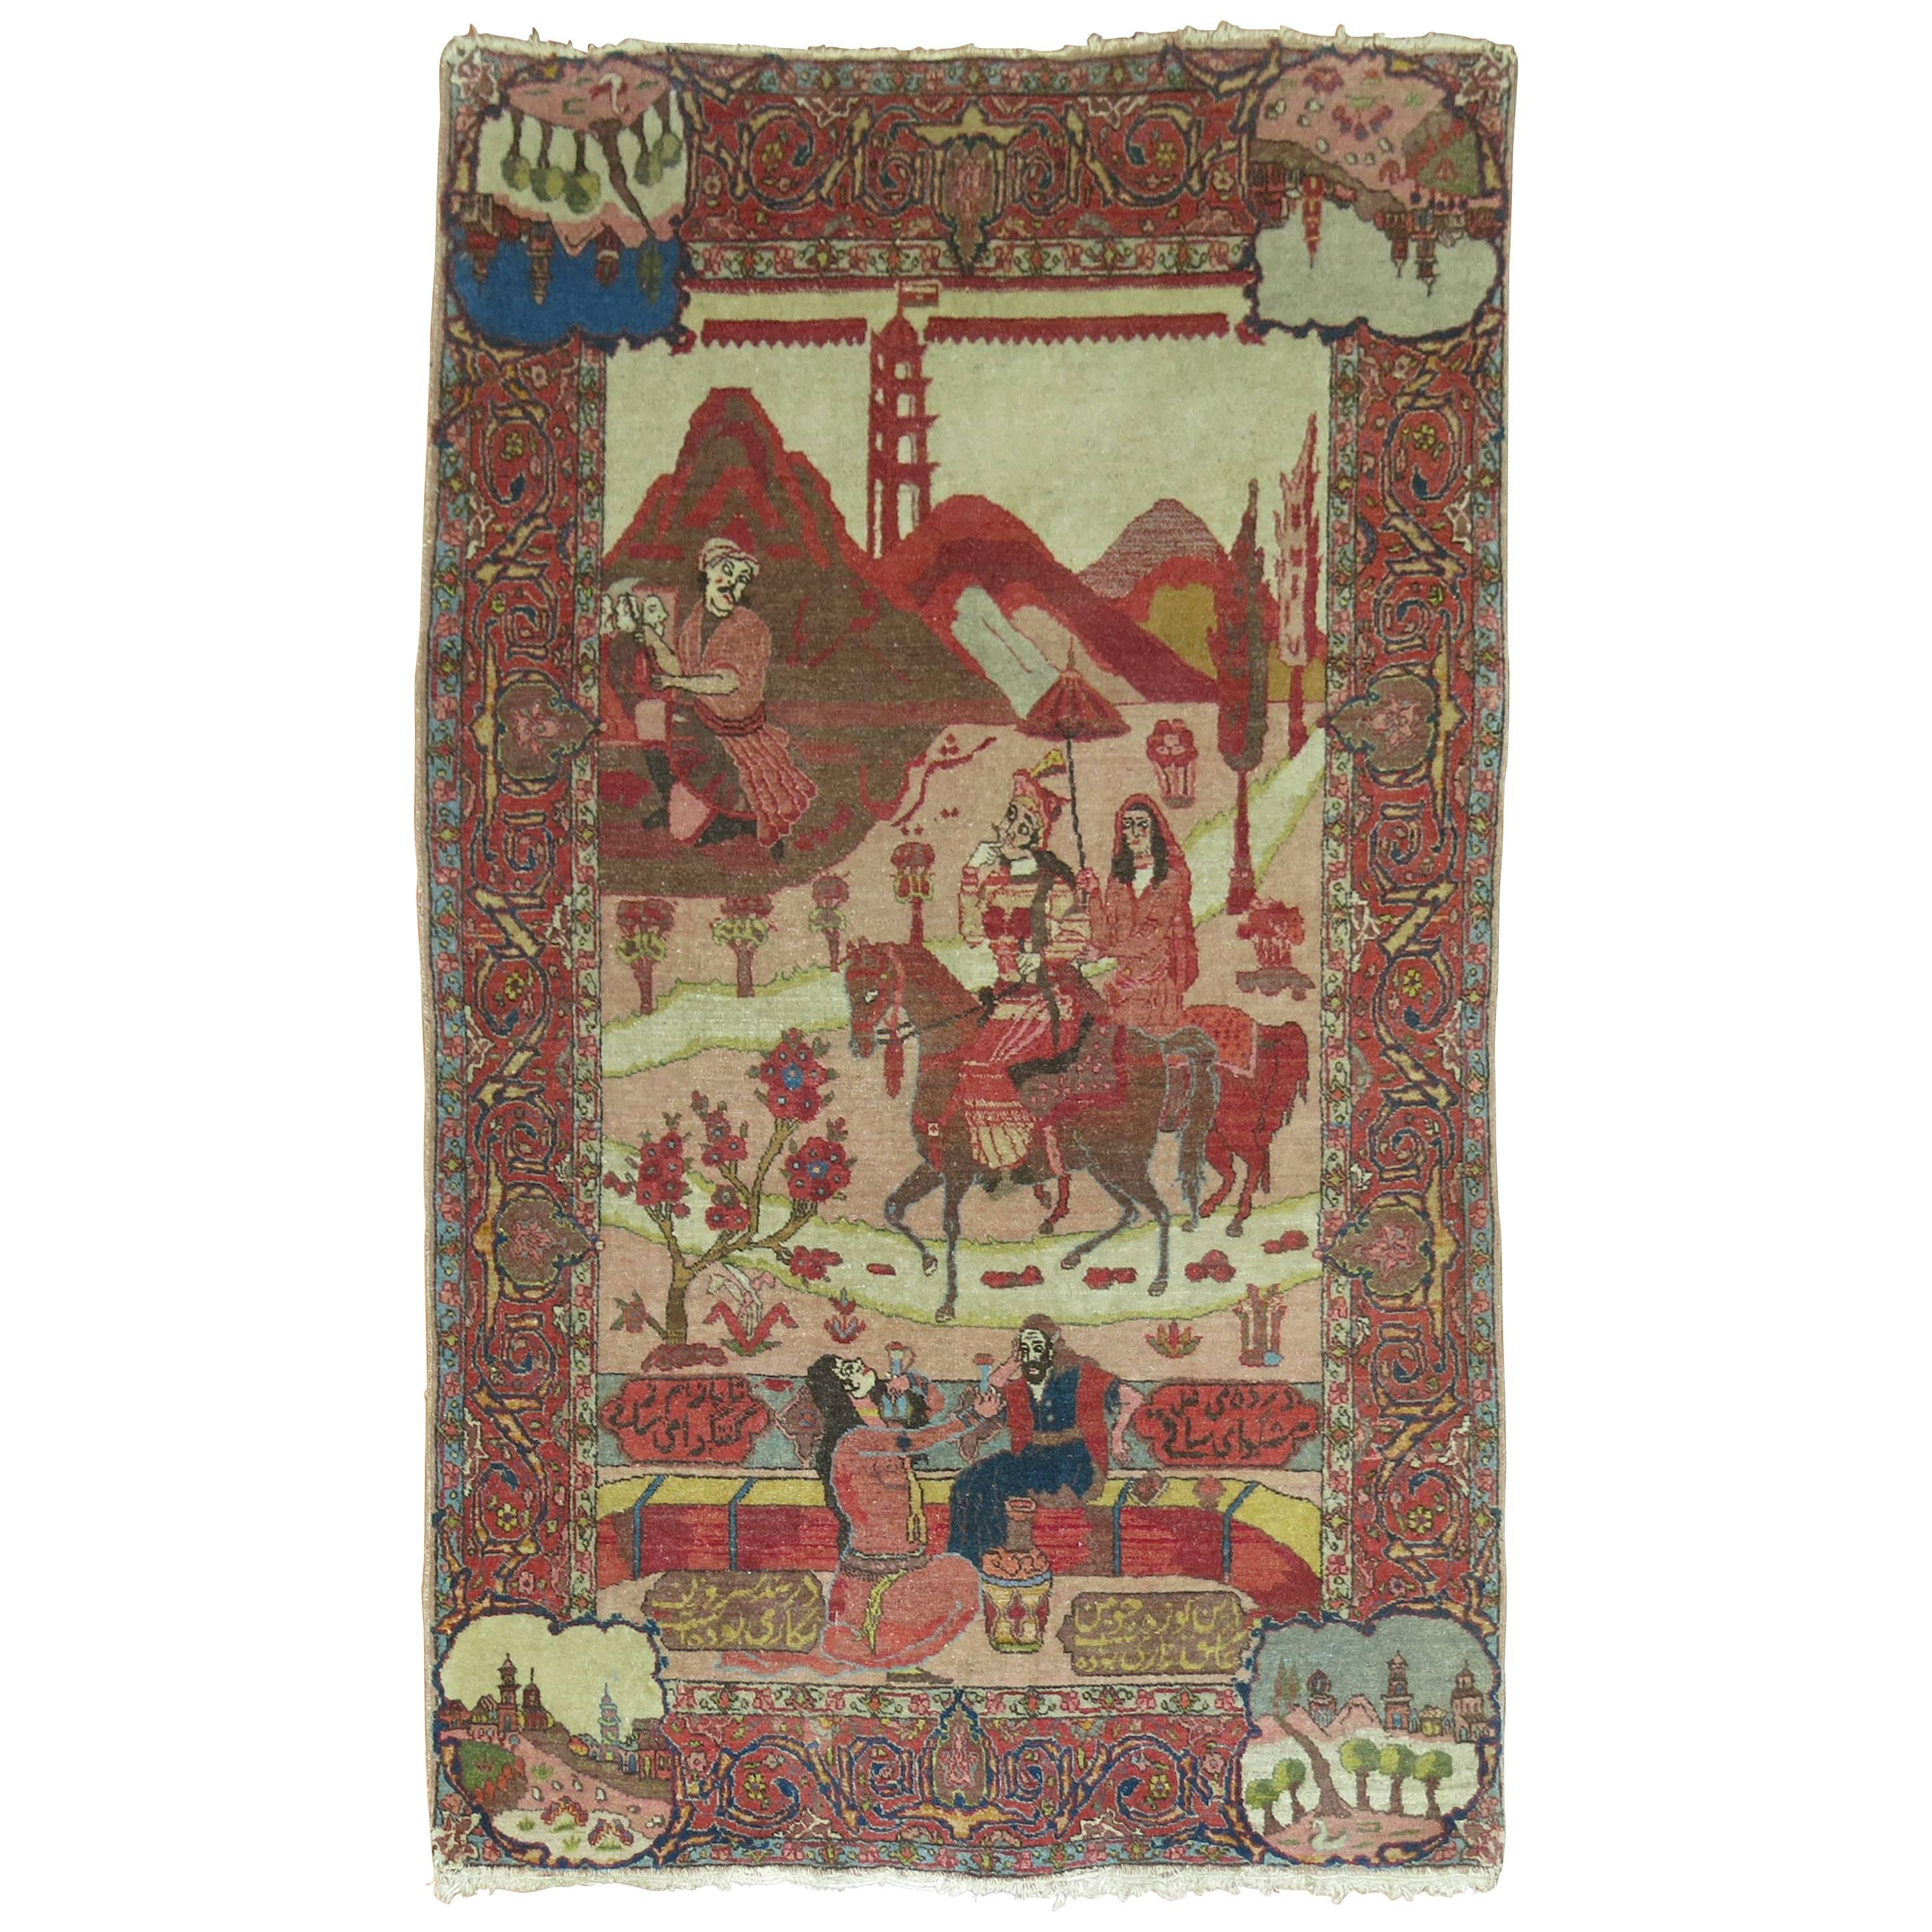 Pictorial Poetic Antique Persian Tabriz Carpet 